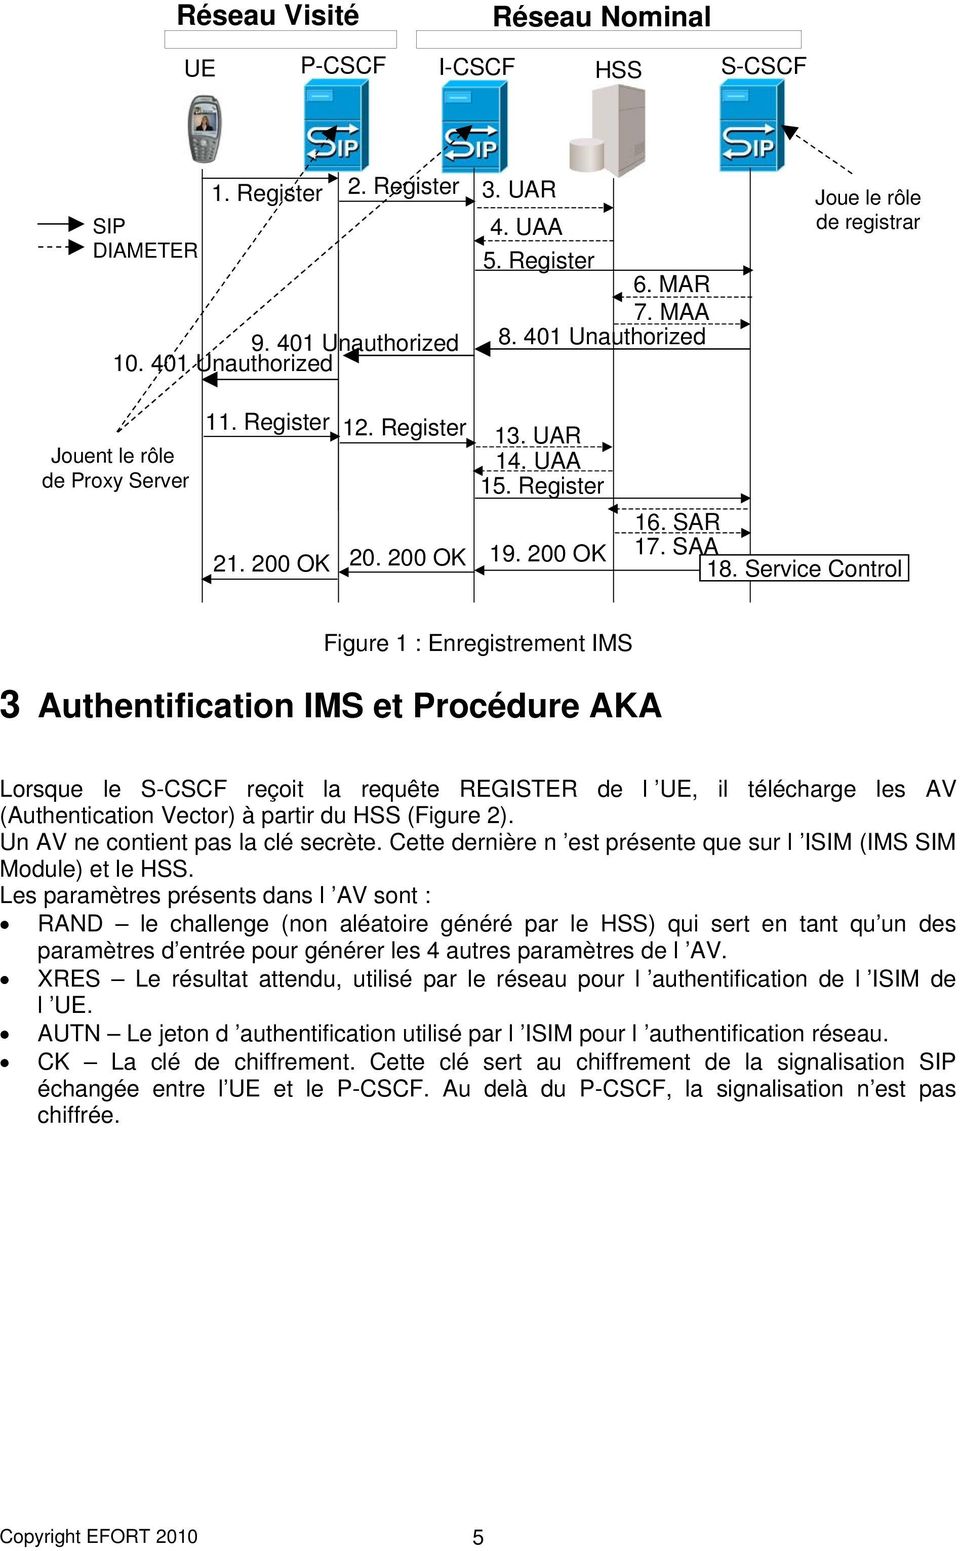 Service Control Figure 1 : Enregistrement IMS 3 Authentification IMS et Procédure AKA Lorsque le S-CSCF reçoit la requête REGISTER de l UE, il télécharge les AV (Authentication Vector) à partir du